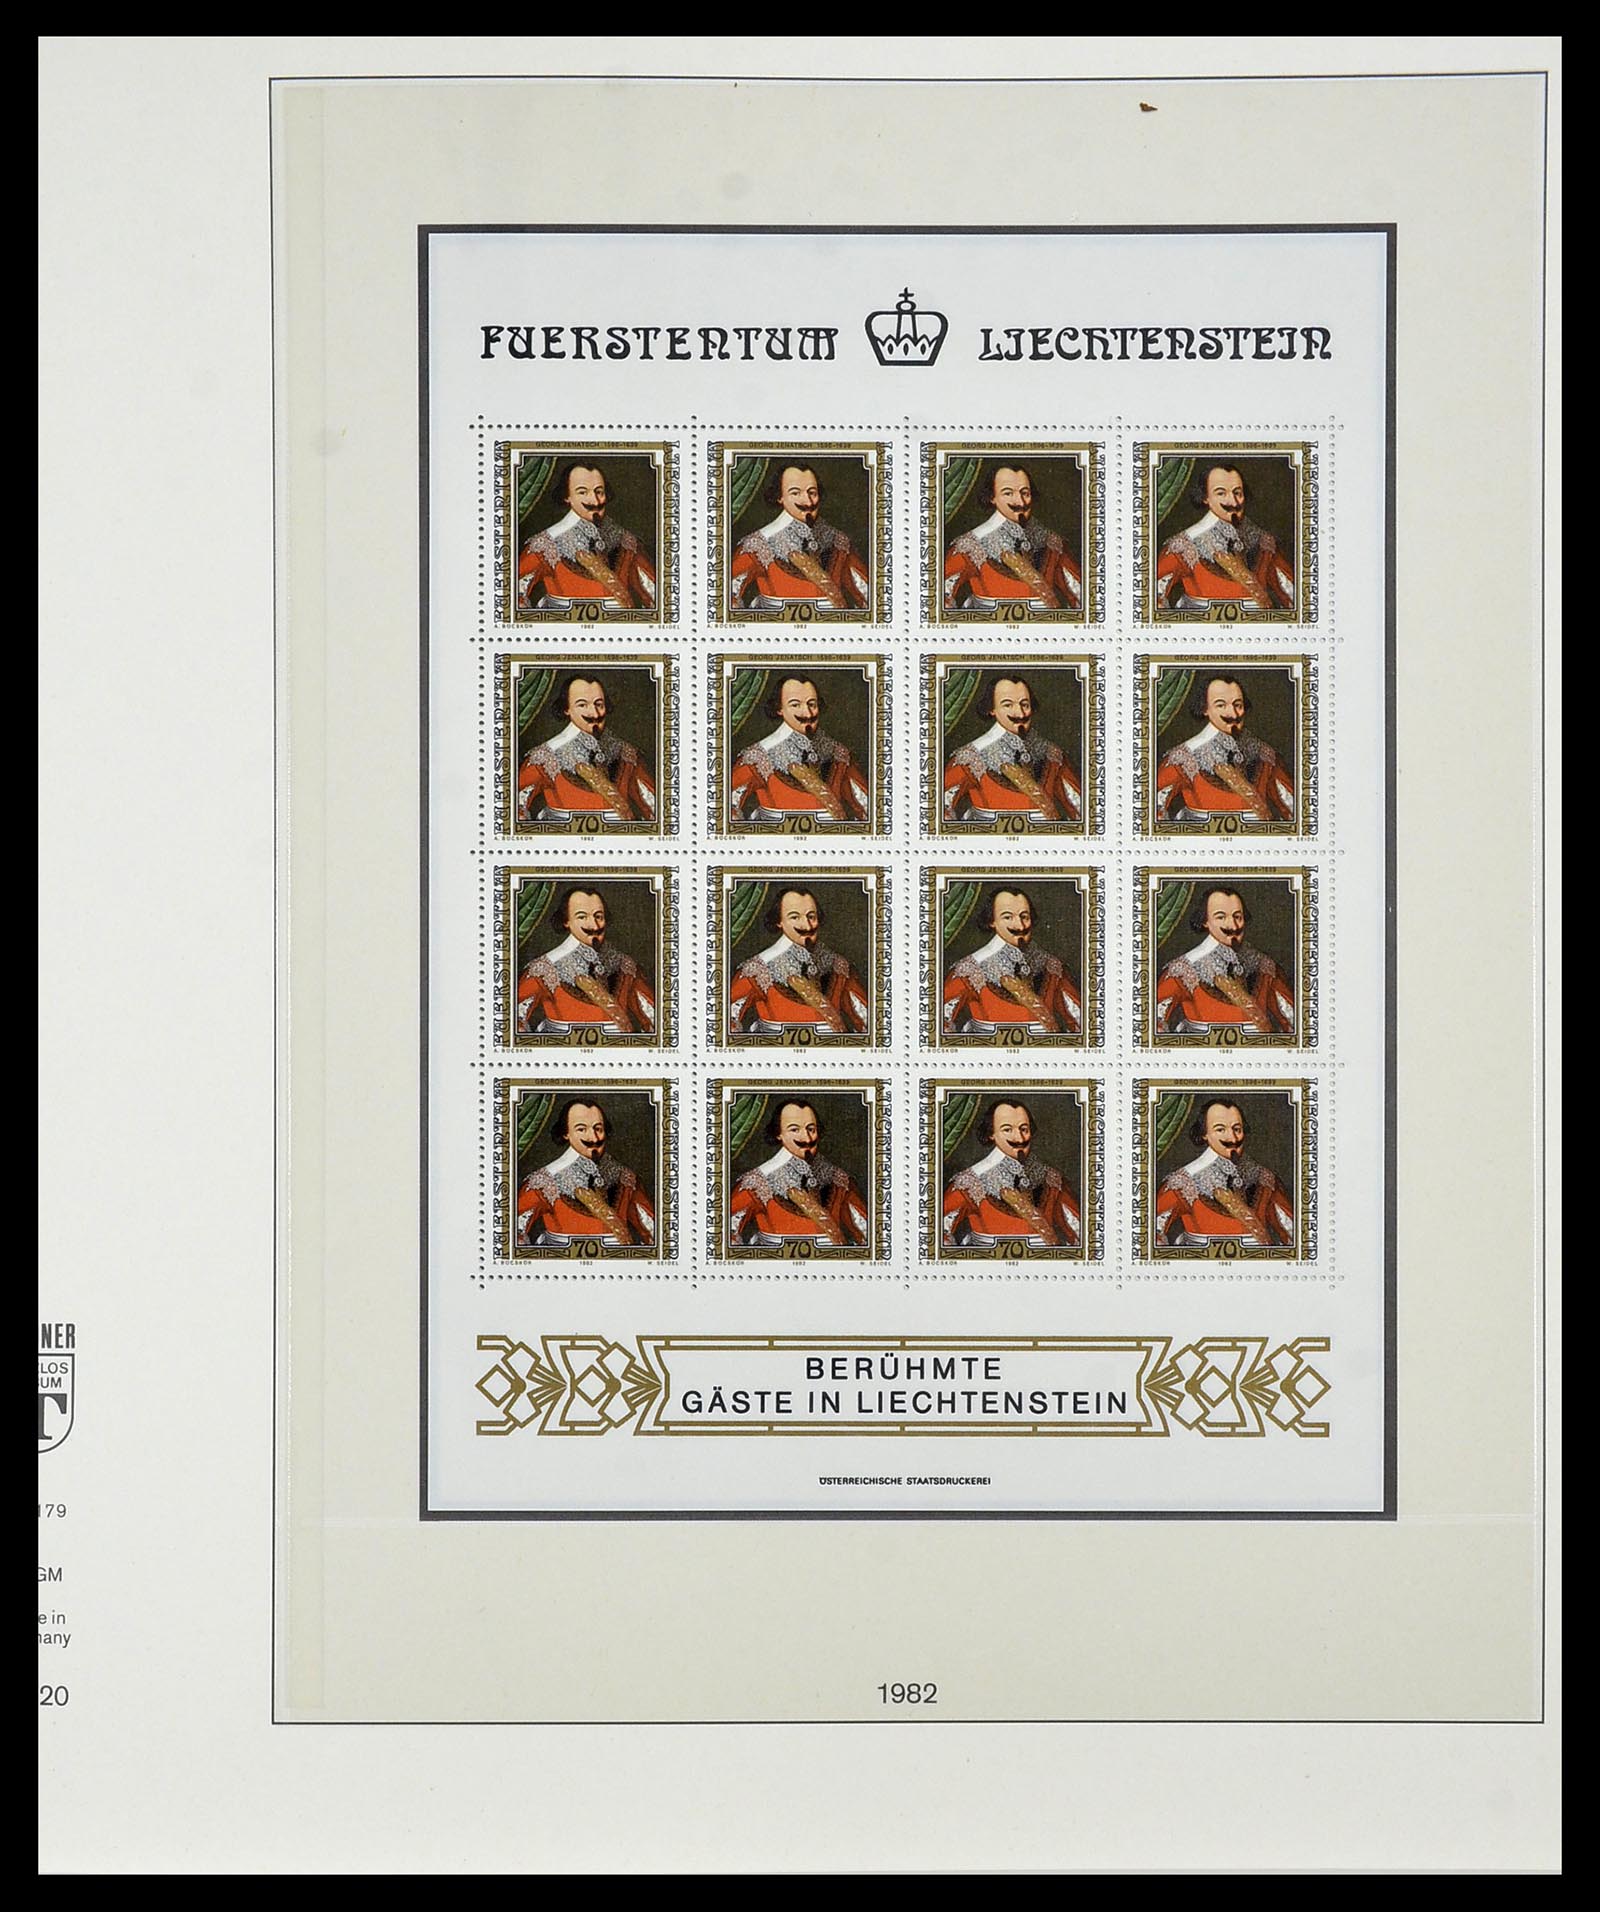 34187 020 - Stamp collection 34187 Liechtenstein kleinbogen 1982-1995.